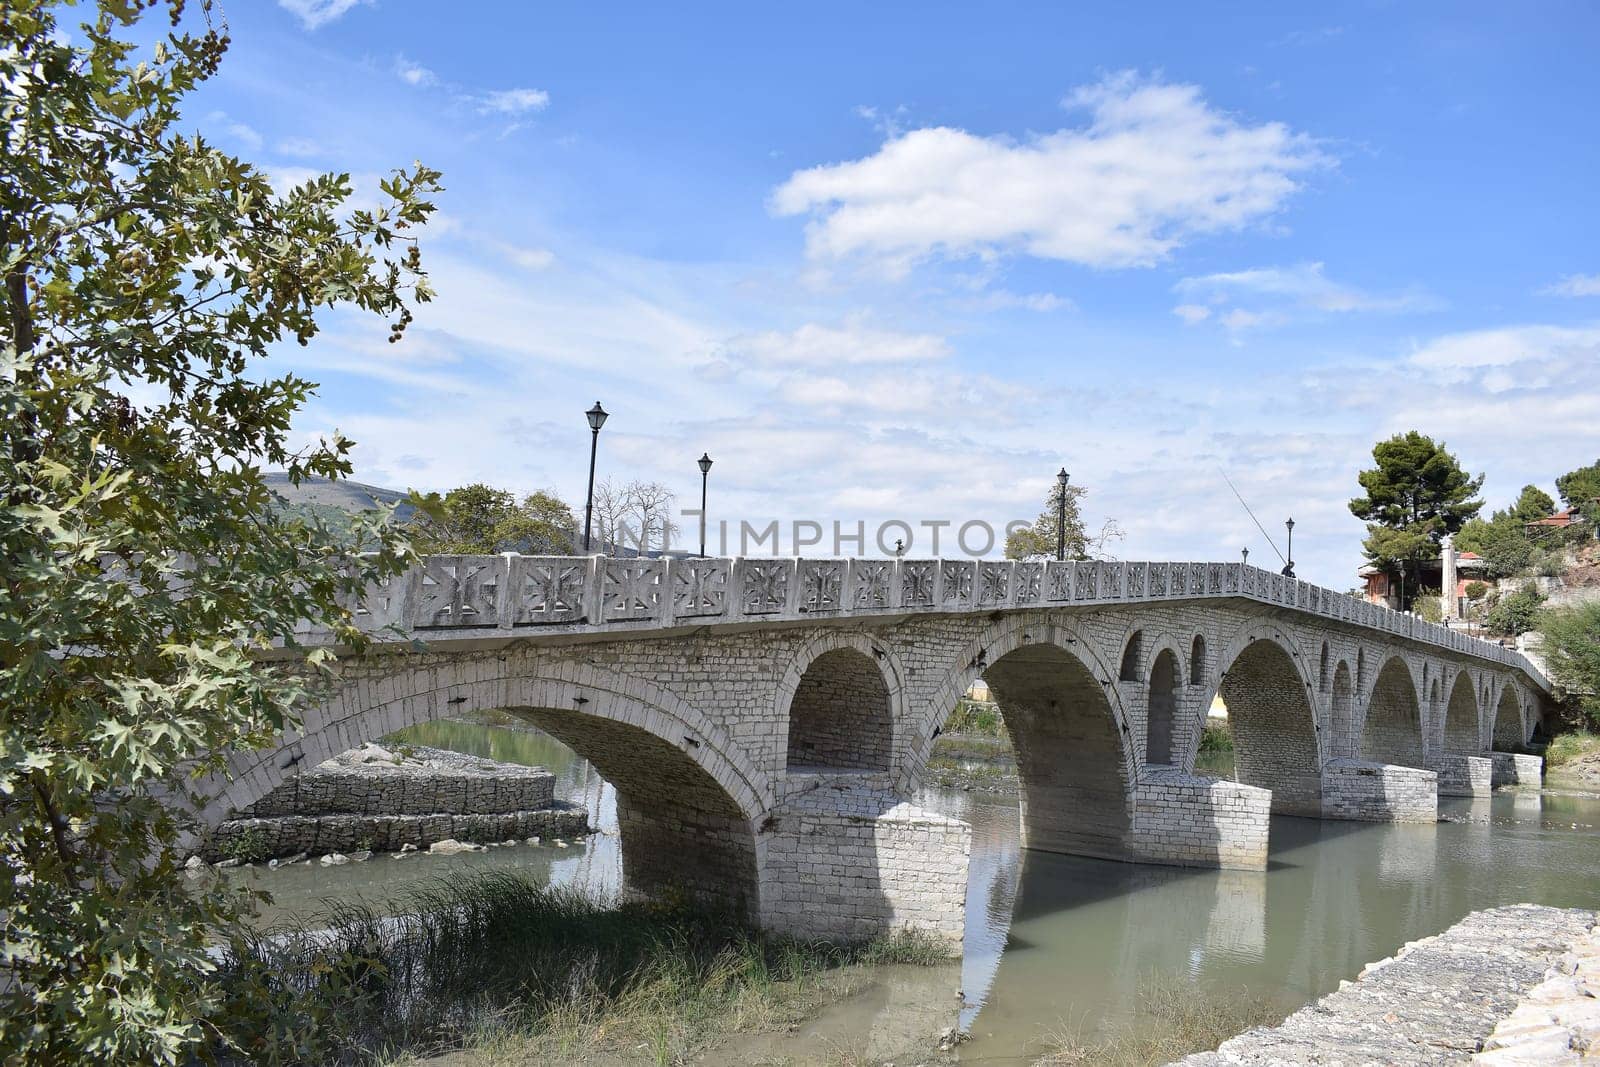 Gorica Bridge in the museum city of Berat. One of the oldest bridges in Albania.